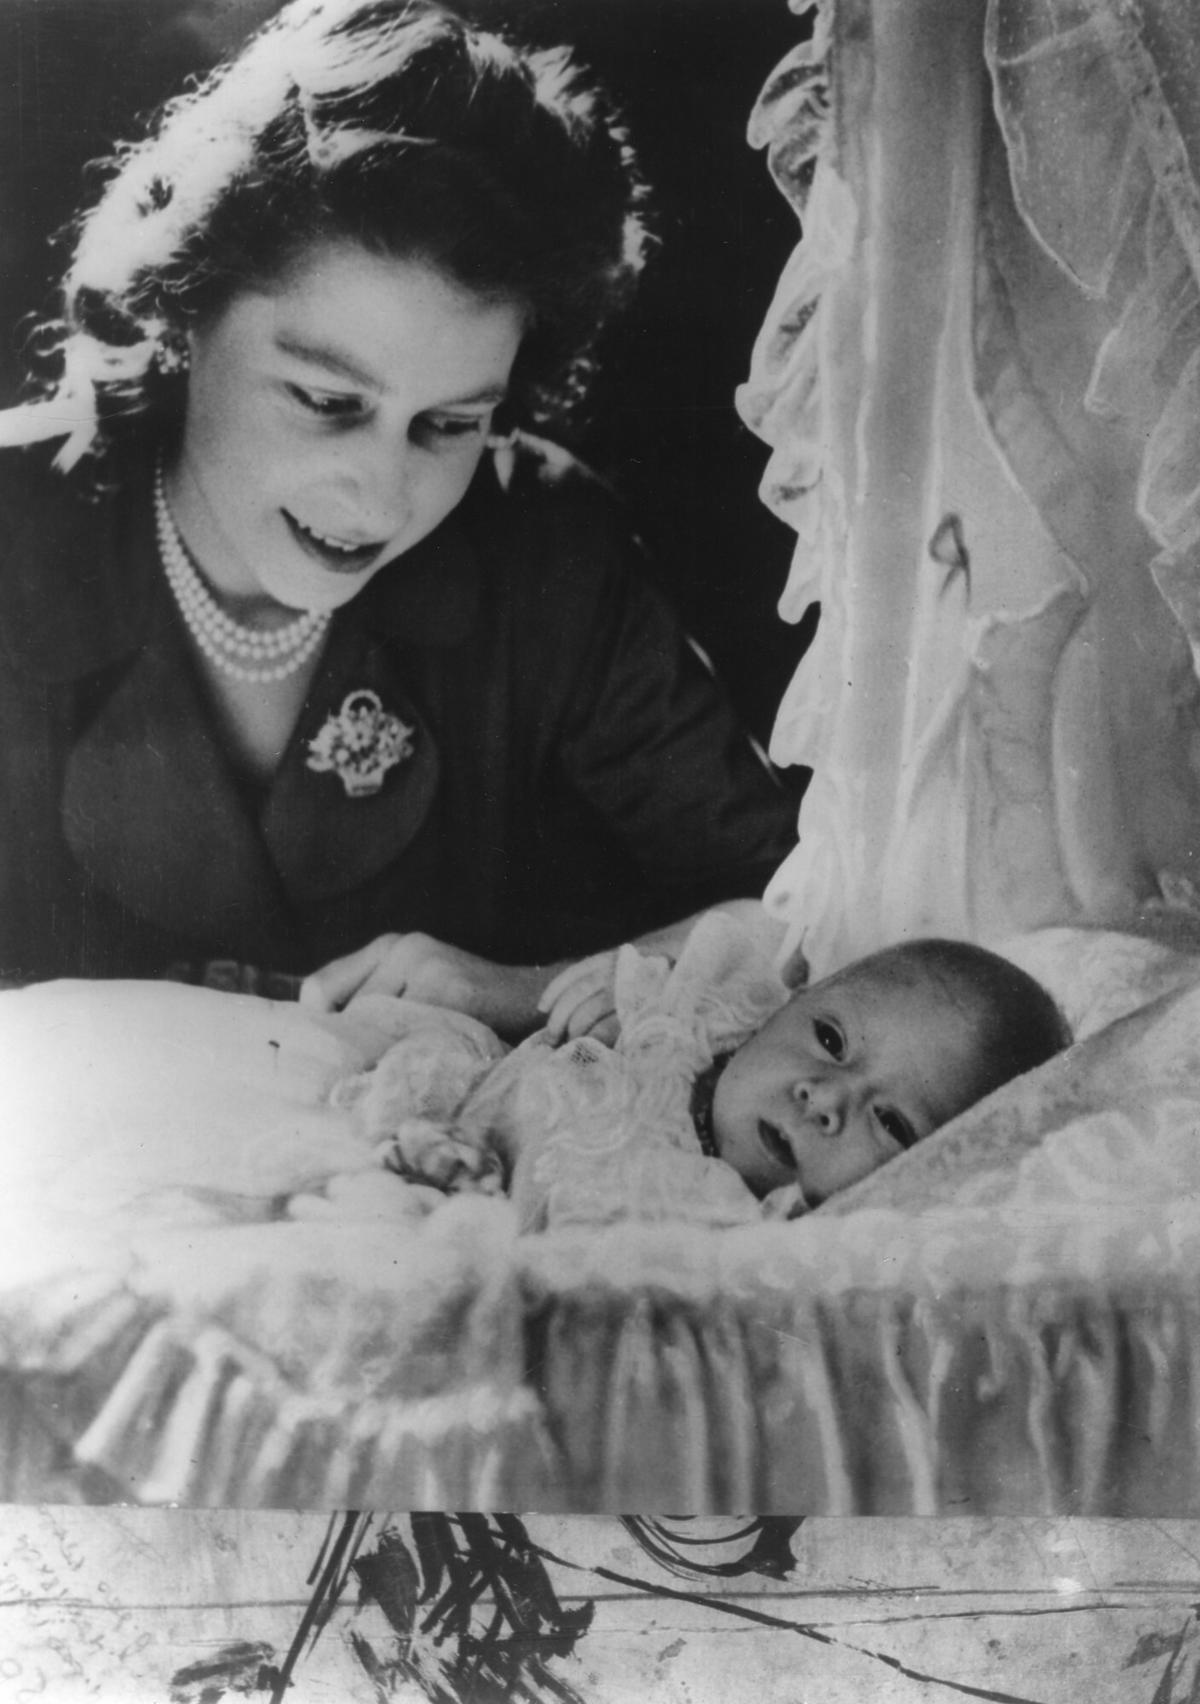 Królowa Elżbieta II ukrywała wszystkie swoje ciąże. Dlaczego nigdy nie pokazała się publicznie z ciążowym brzuszkiem?